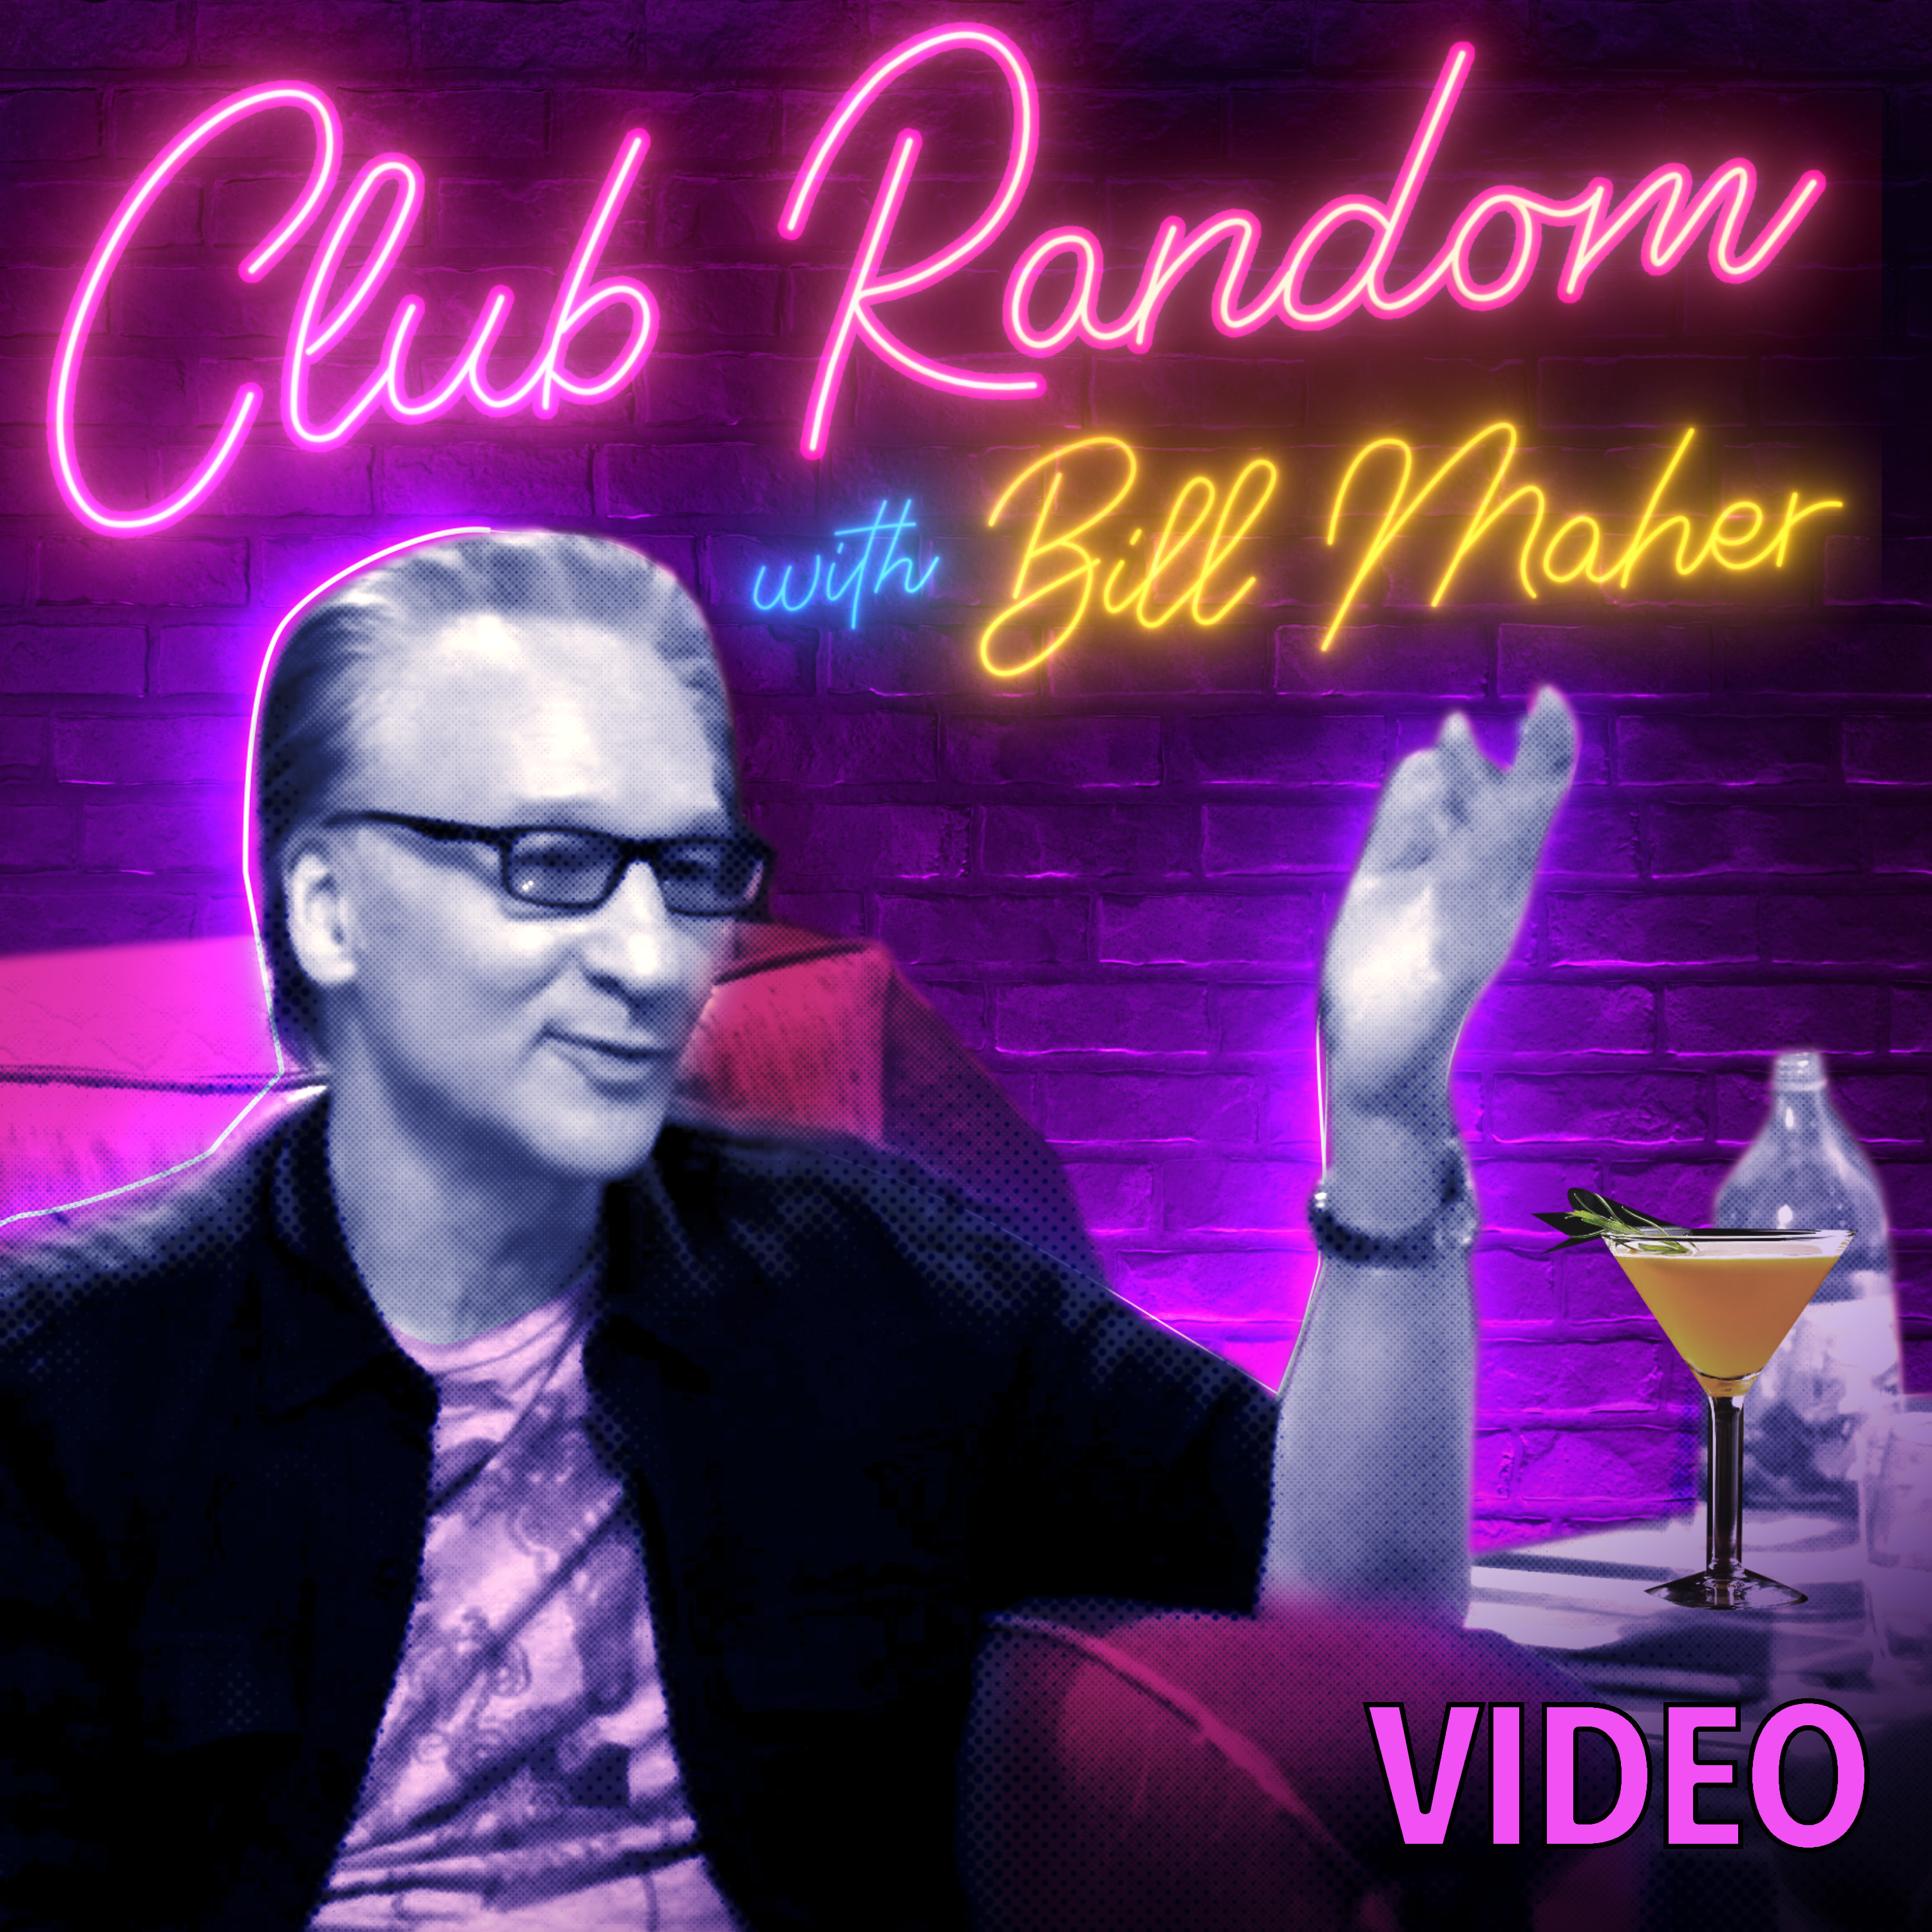 Video: Brad Paisley | Club Random with Bill Maher